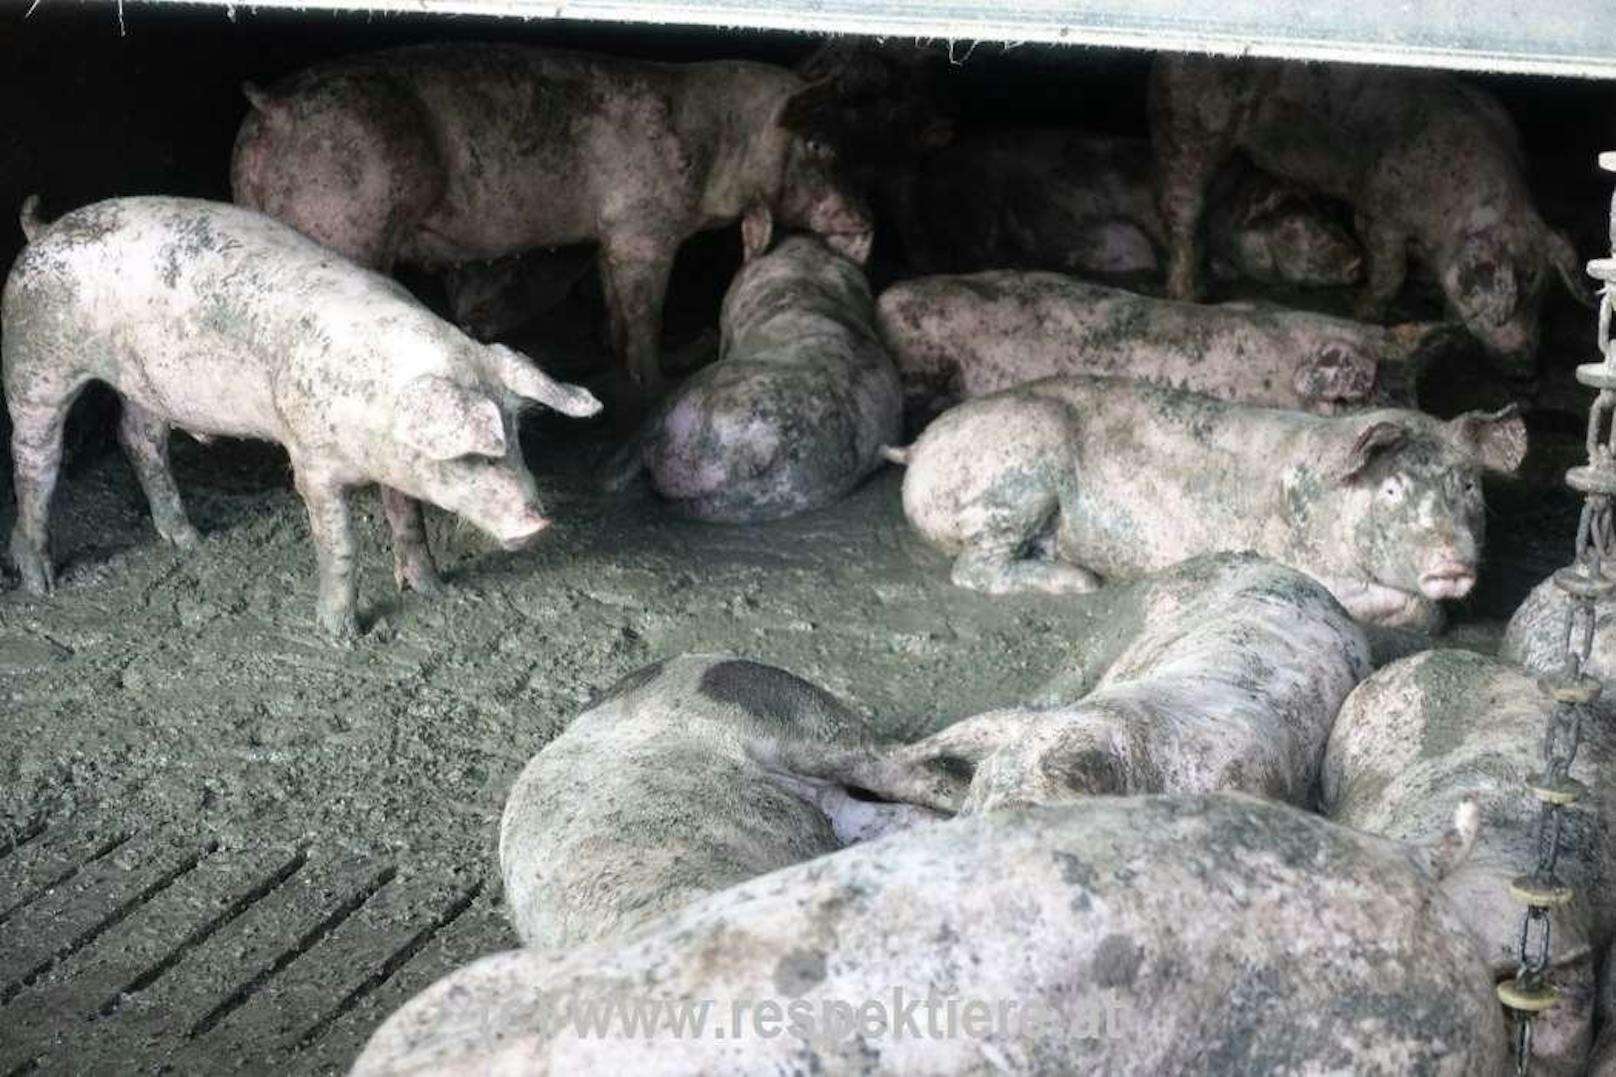 Der Verein "Respektiere" prangert die Zustände in einem Schweinestall in NÖ an.